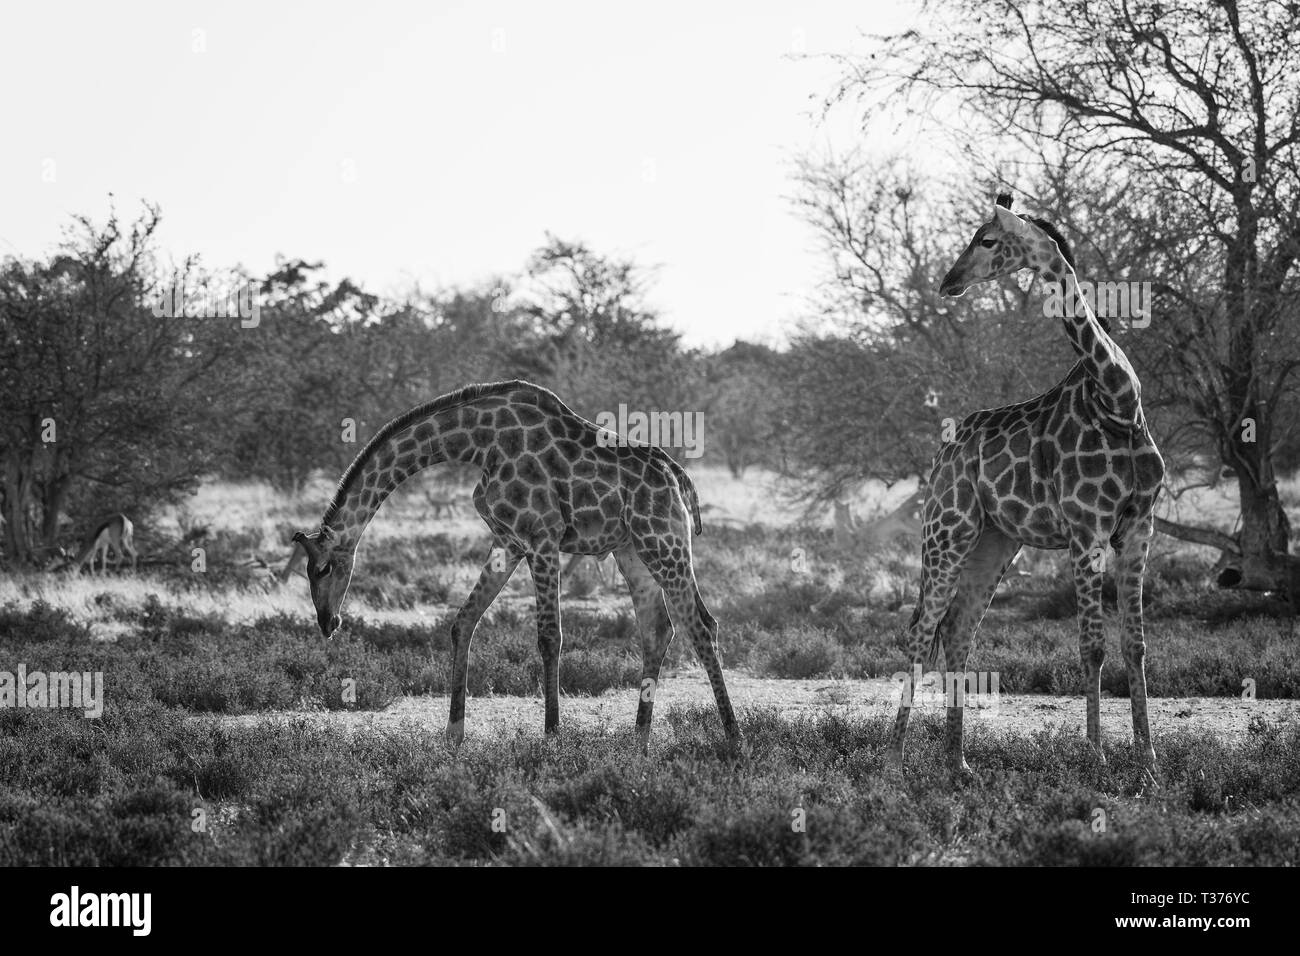 Jirafa - Giraffa giraffa, safari en el Parque Nacional de Etosha, Namibia, Africa. Cute miembro de cinco grandes de África. Foto de stock